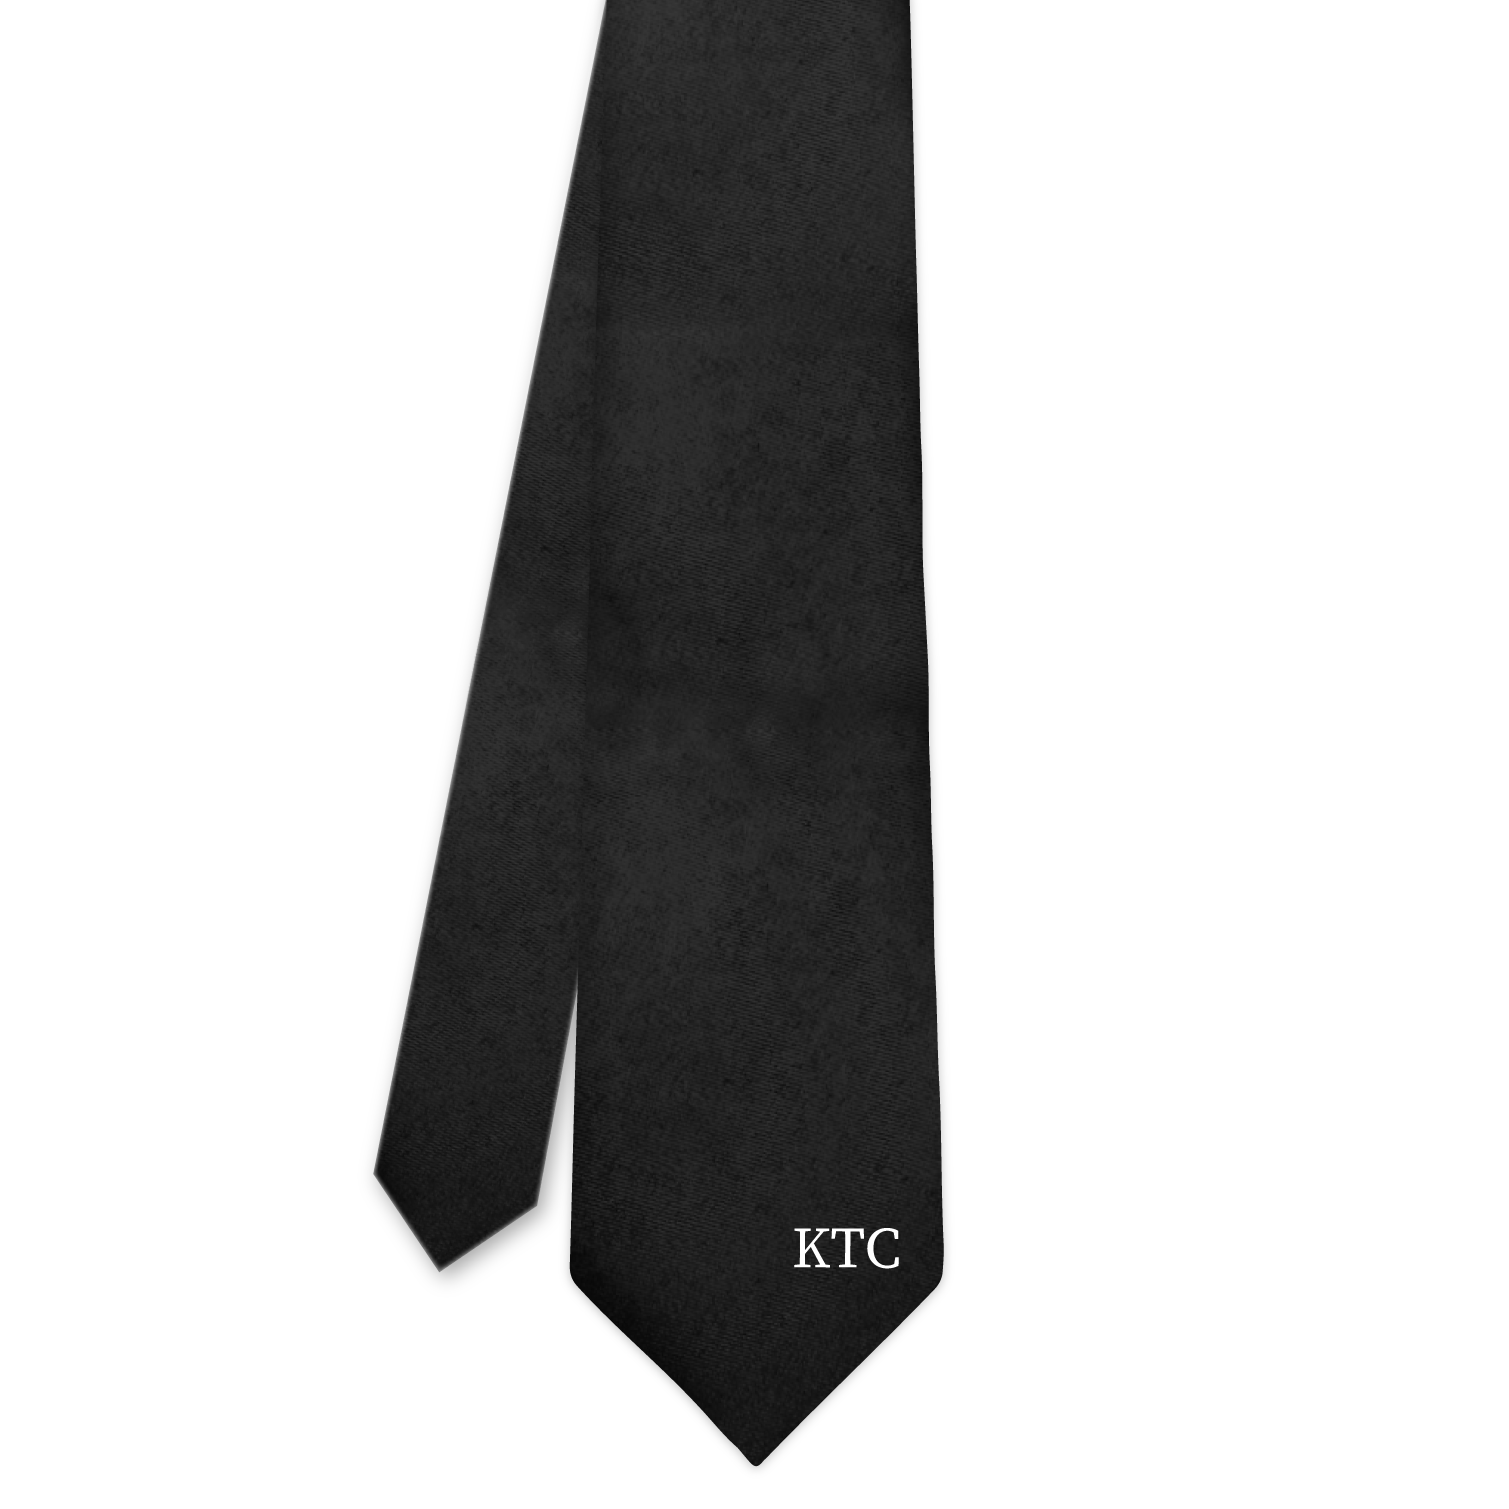 Serif (Initials on Tip) Monogram Necktie -  -  - Knotty Tie Co.